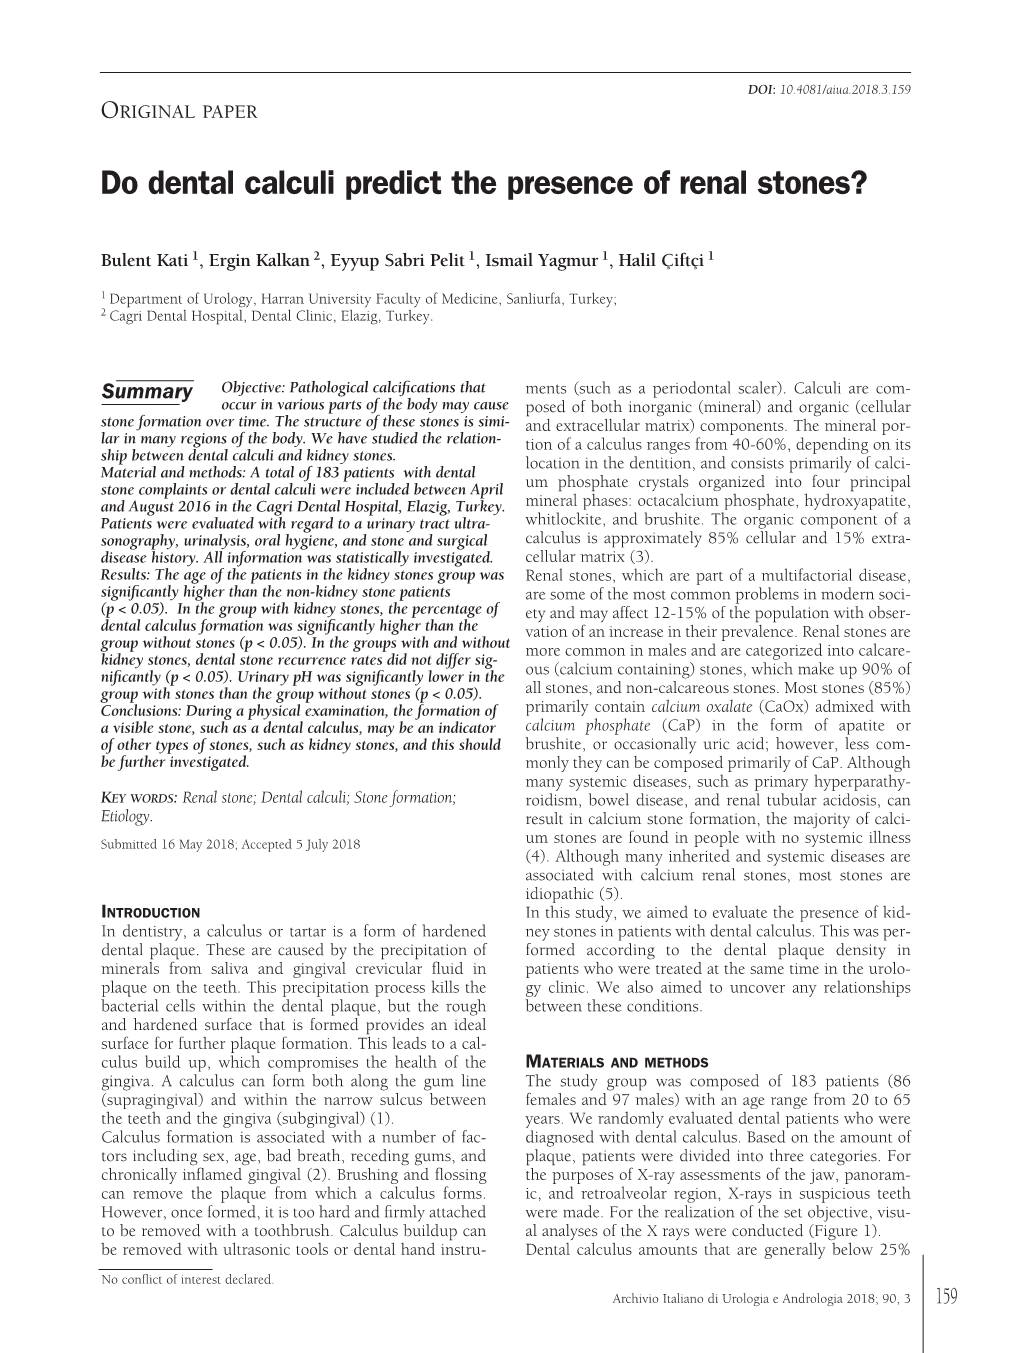 Do Dental Calculi Predict the Presence of Renal Stones?